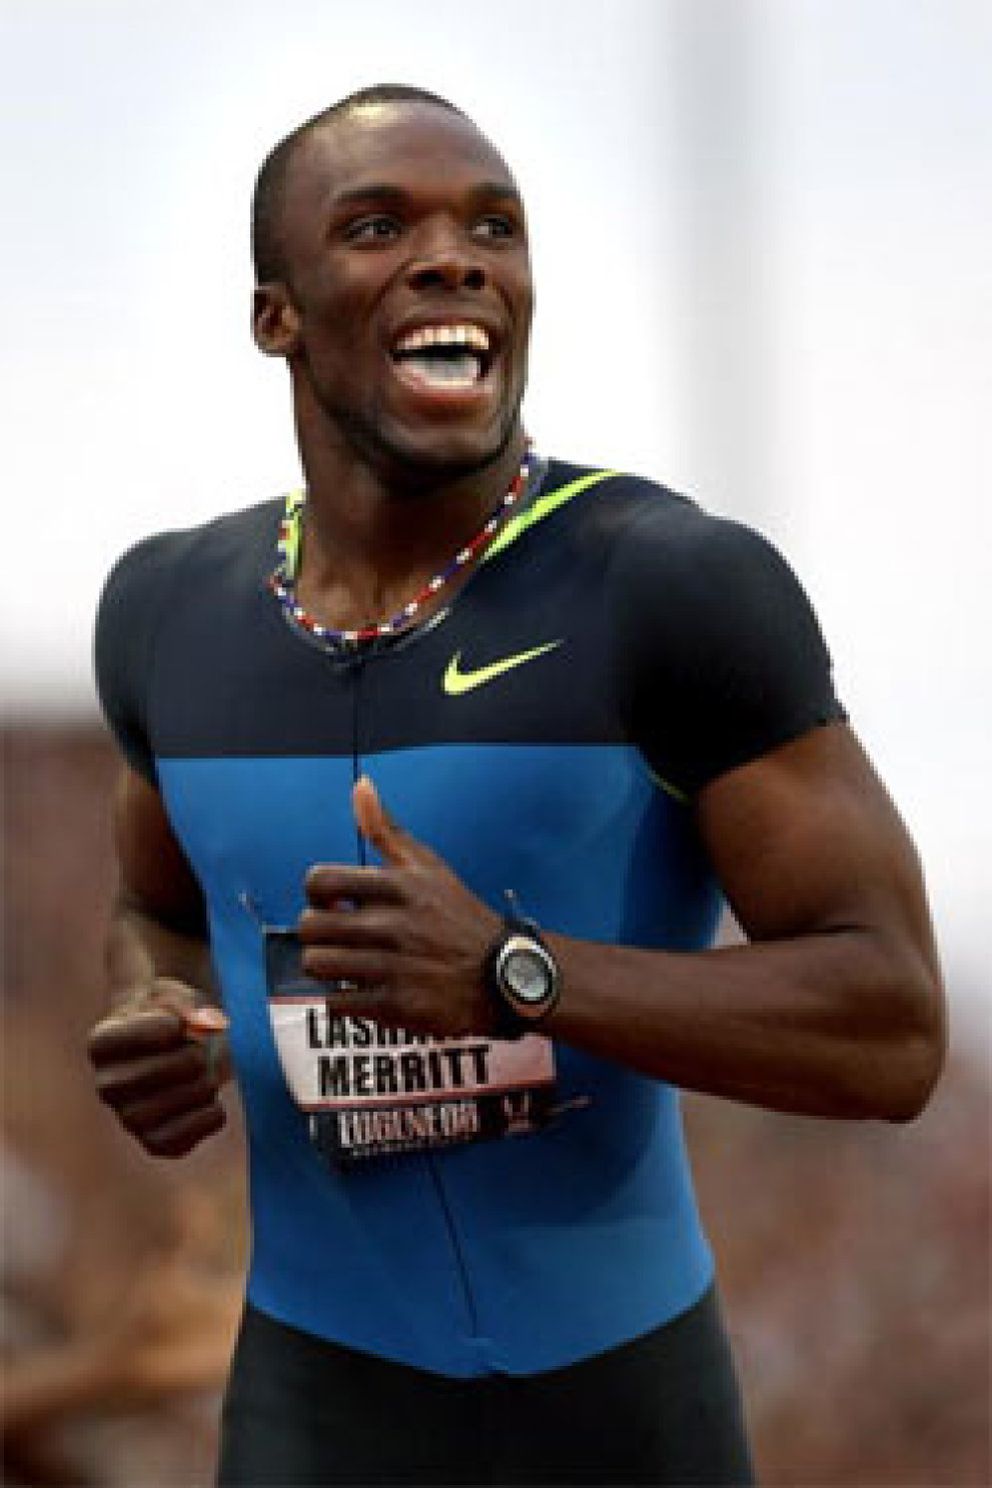 Foto: El campeón olímpico de 400 metros alega que tomó una sustancia dopante para alargar su pene